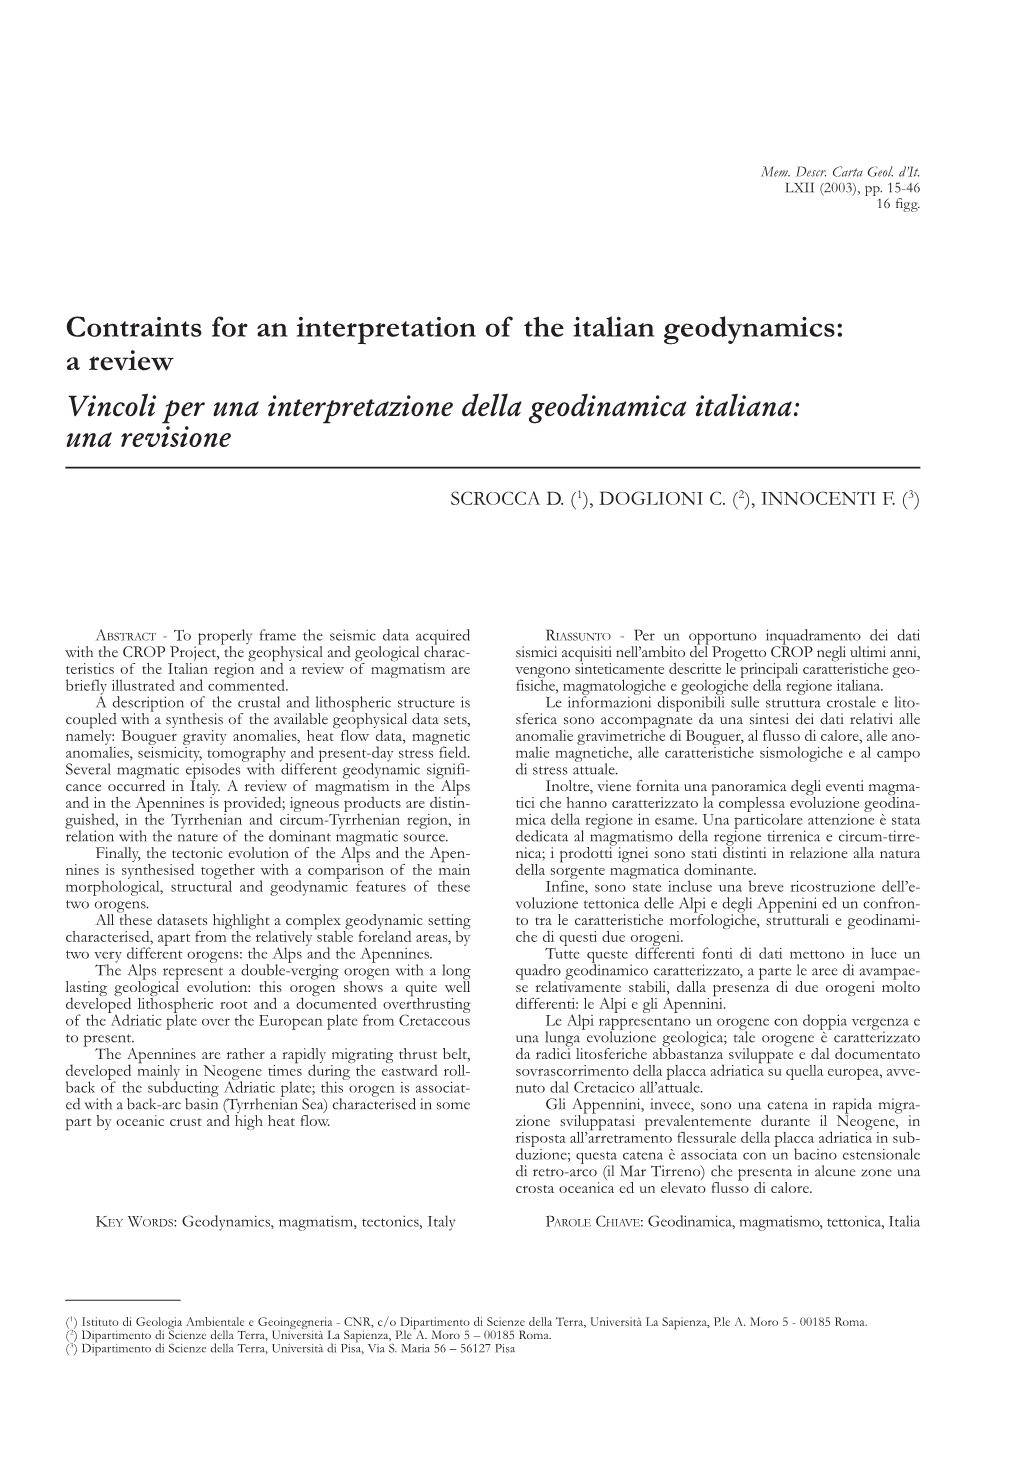 Contraints for an Interpretation of the Italian Geodynamics: a Review Vincoli Per Una Interpretazione Della Geodinamica Italiana: Una Revisione